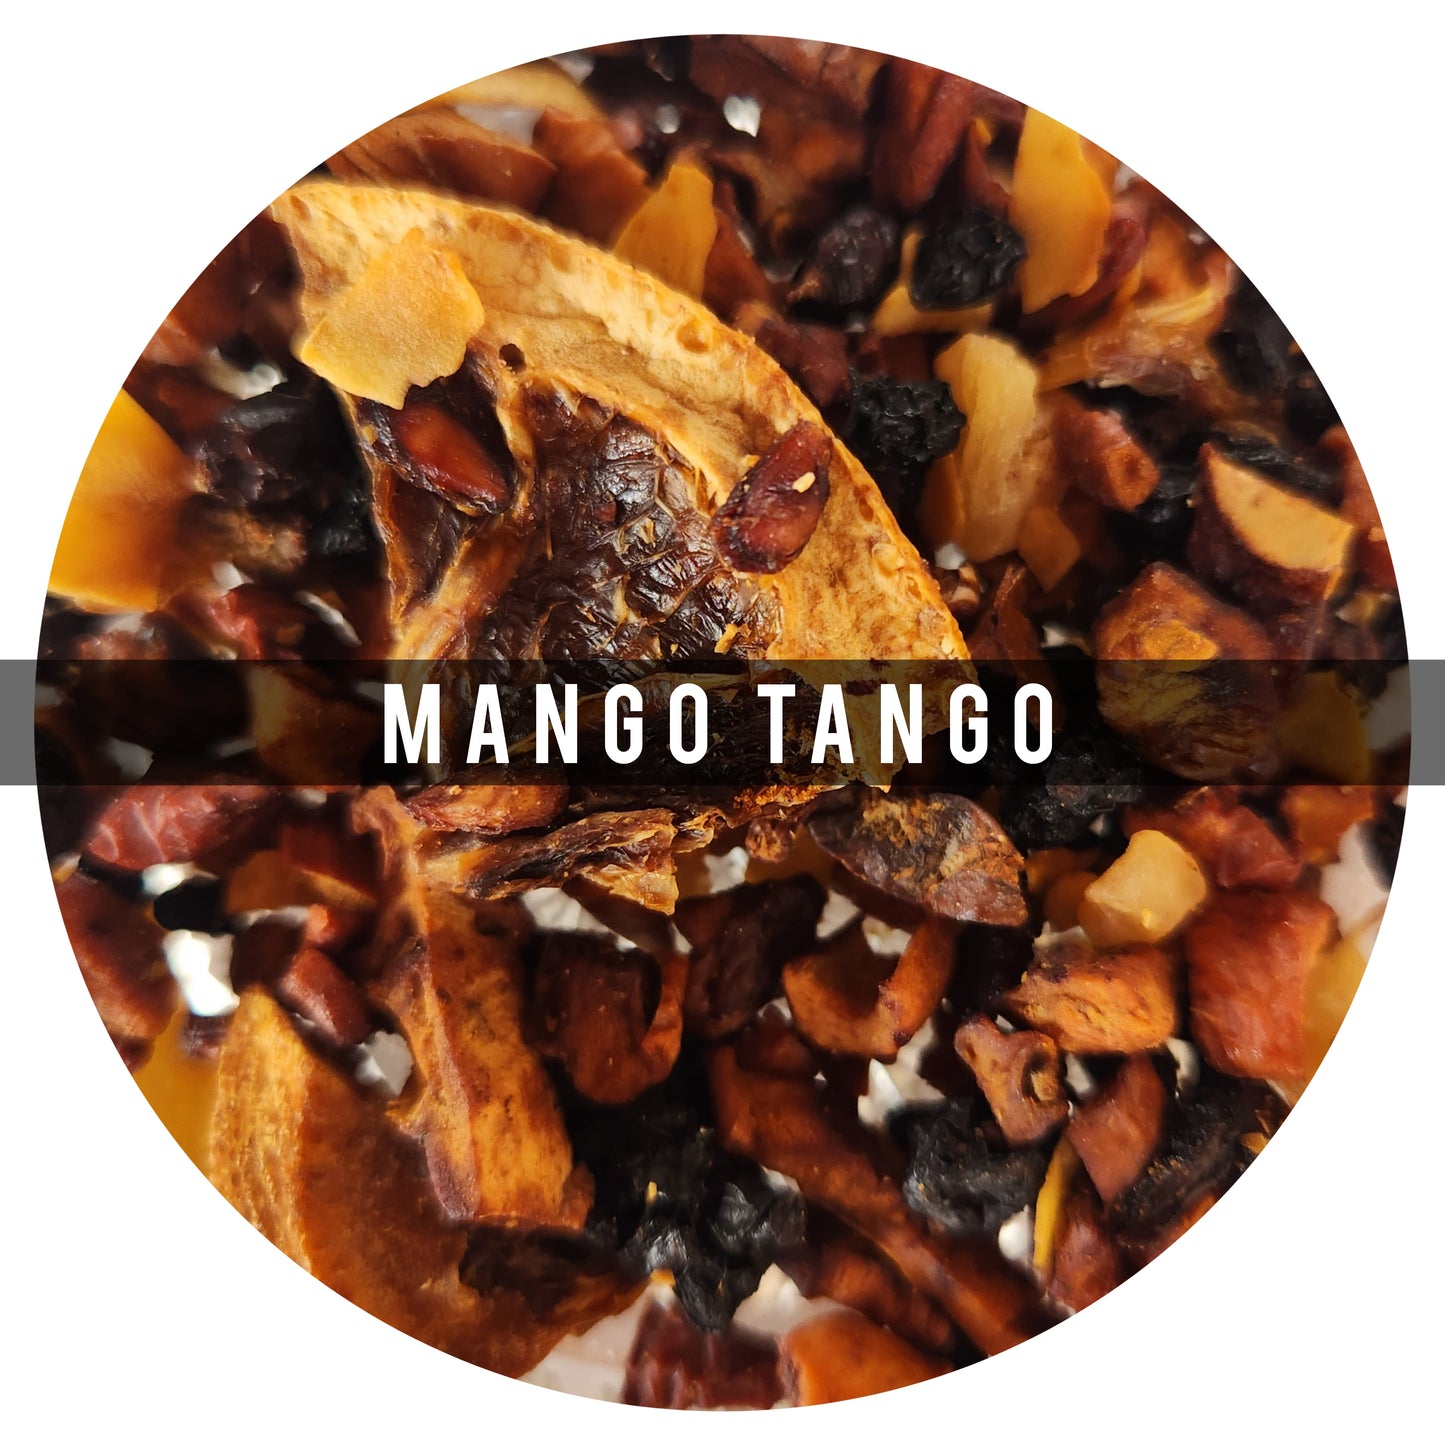 Mango Tango 100g:Es una jugosa mezcla de frutas que contiene Bayas de Goji, las cuales tienen un alto contenido de antioxidantes, son anticancerígenos, y antienvejecimiento.
Ingredientes: Piña, mango, Manzana, Granada, Naranja, Bayas de Goji, Bayas de Sa